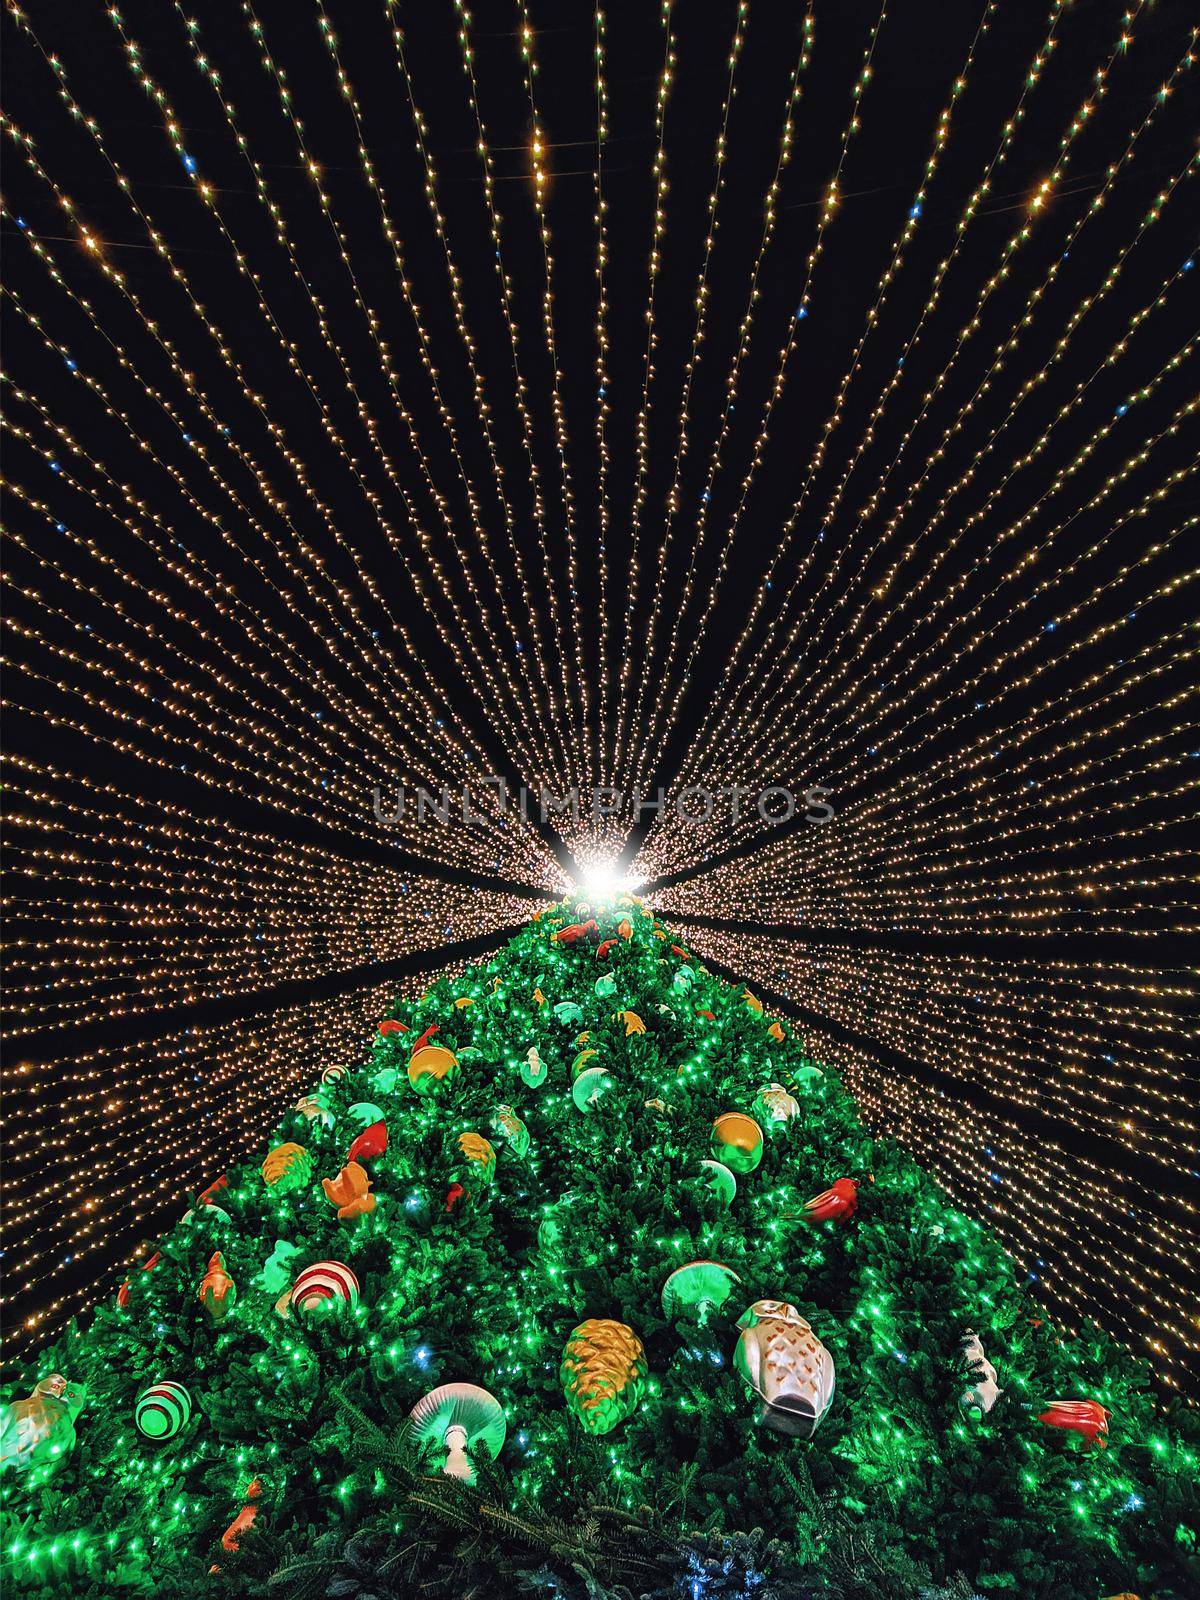 The main Christmas tree of Ukraine. by Nickstock